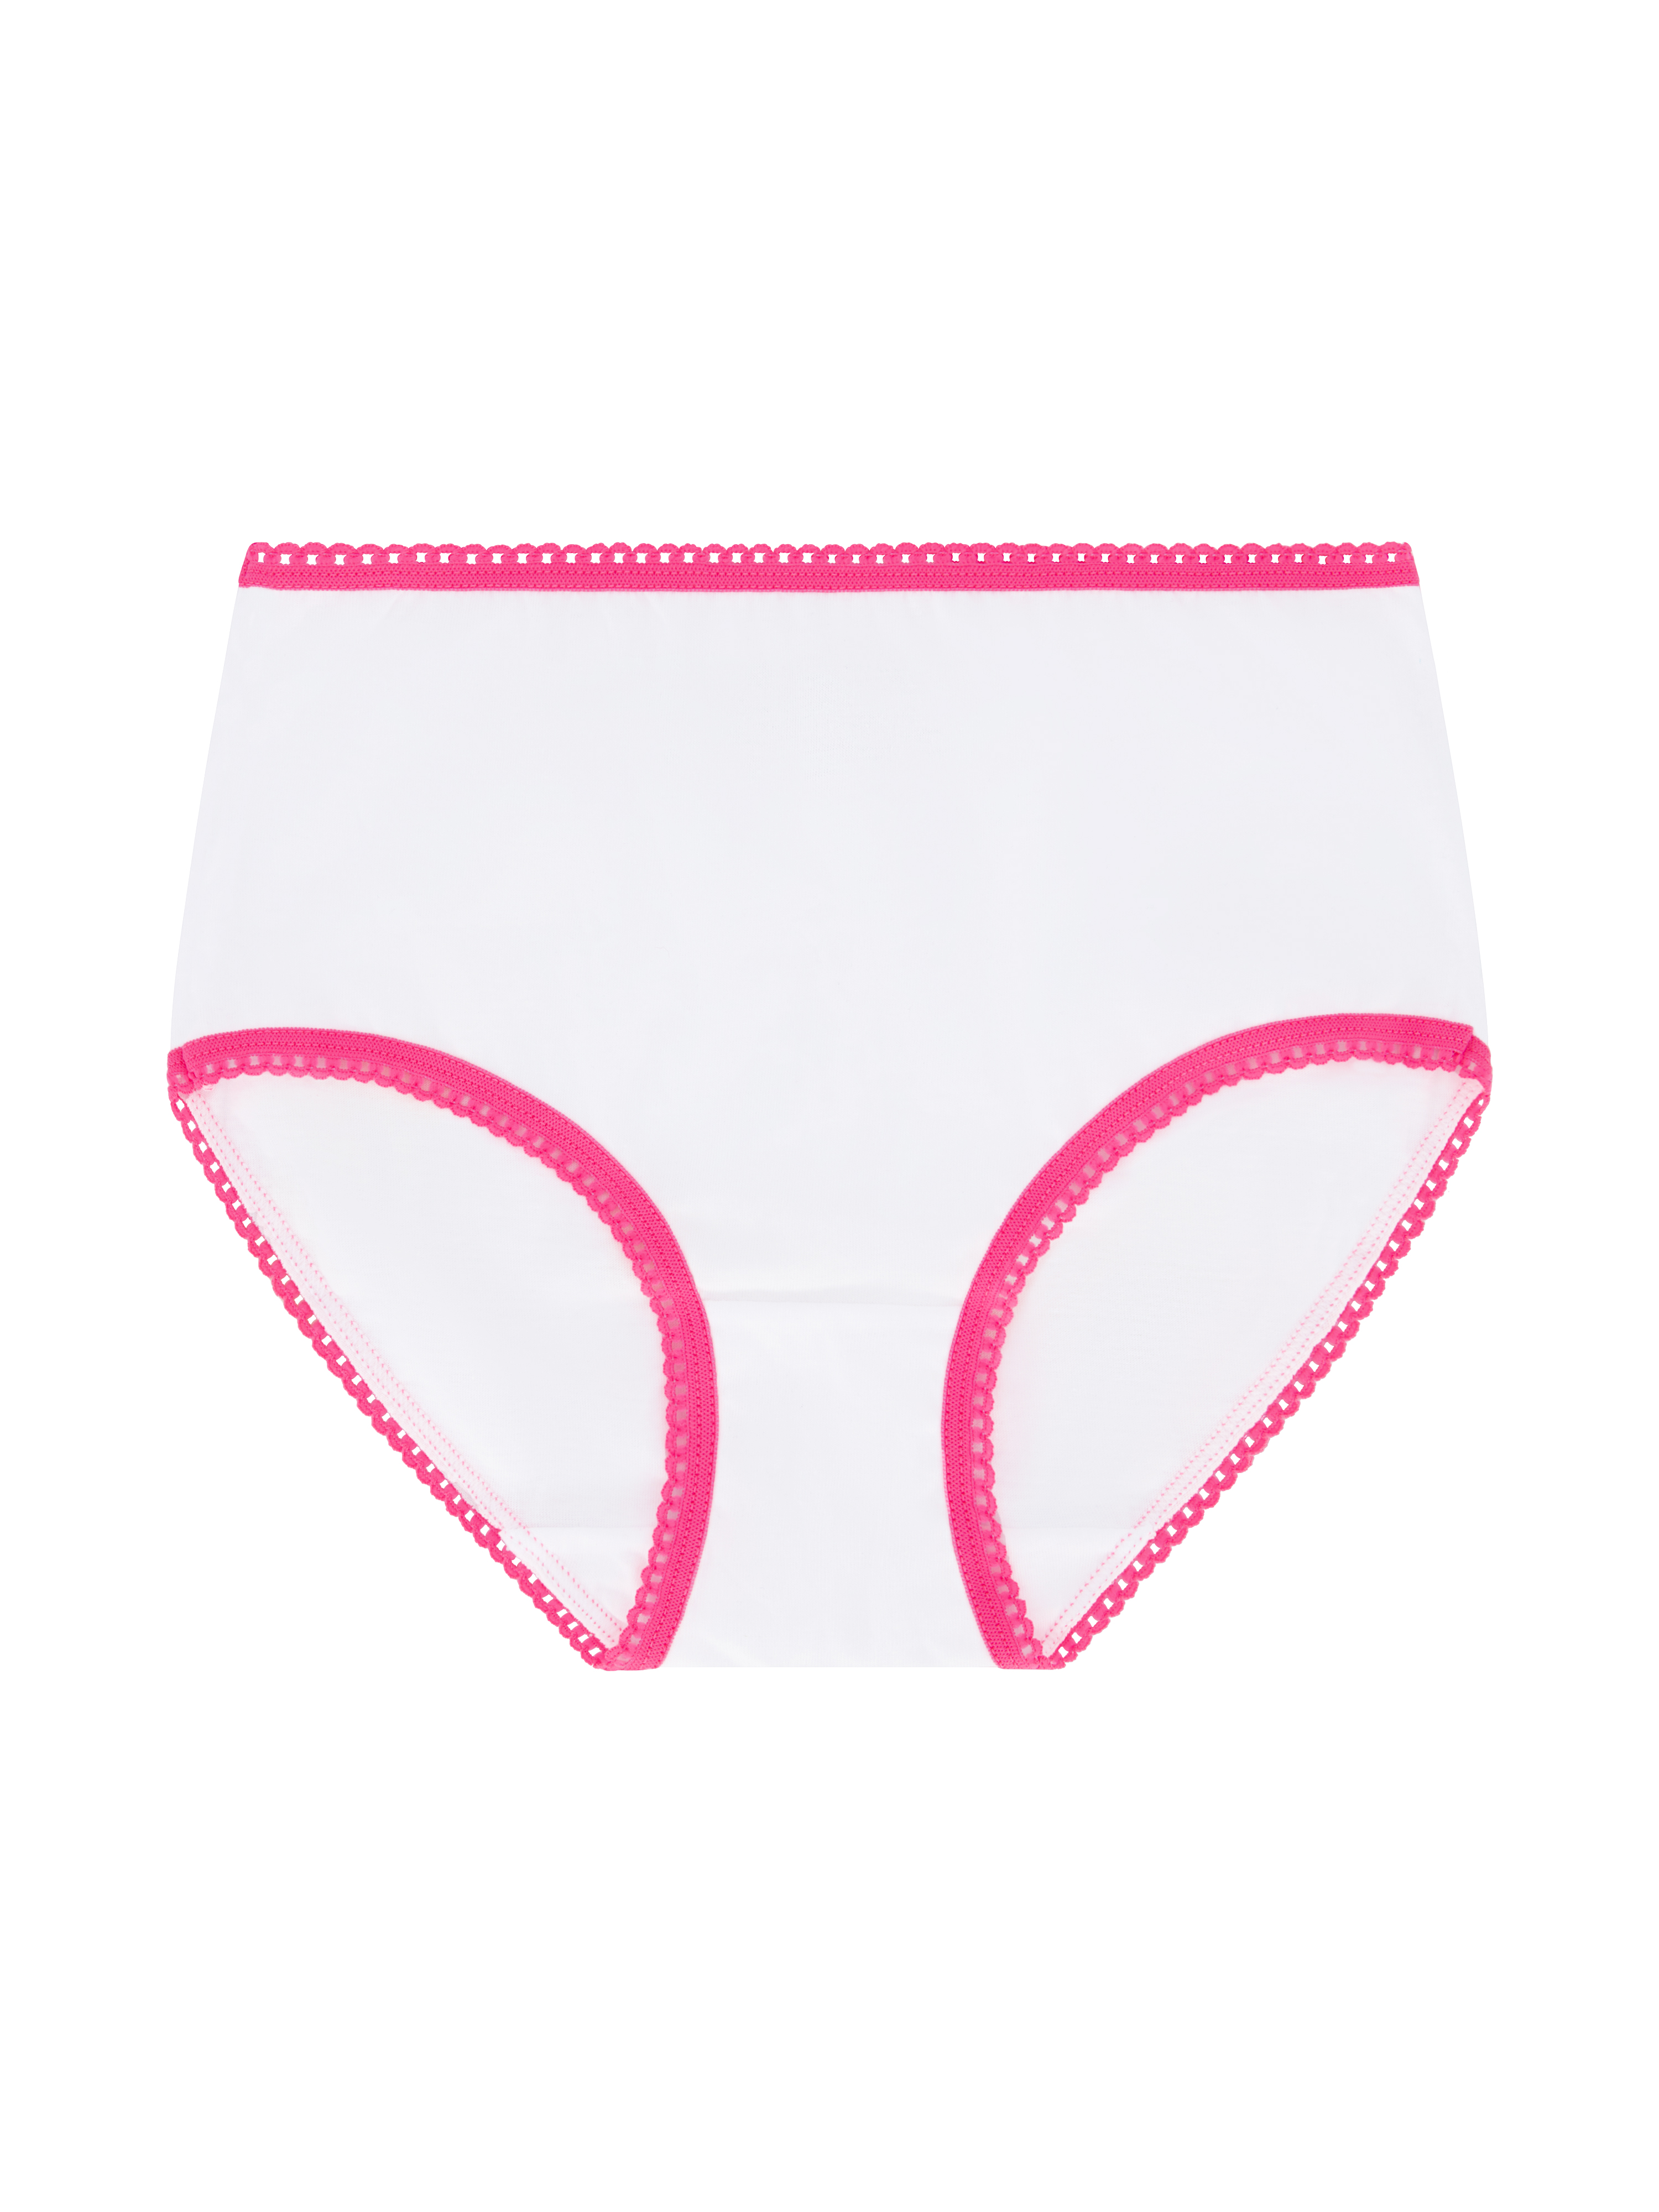 Wonder Nation Girls Brief Underwear 14-Pack, Sizes 4-18 - image 6 of 17